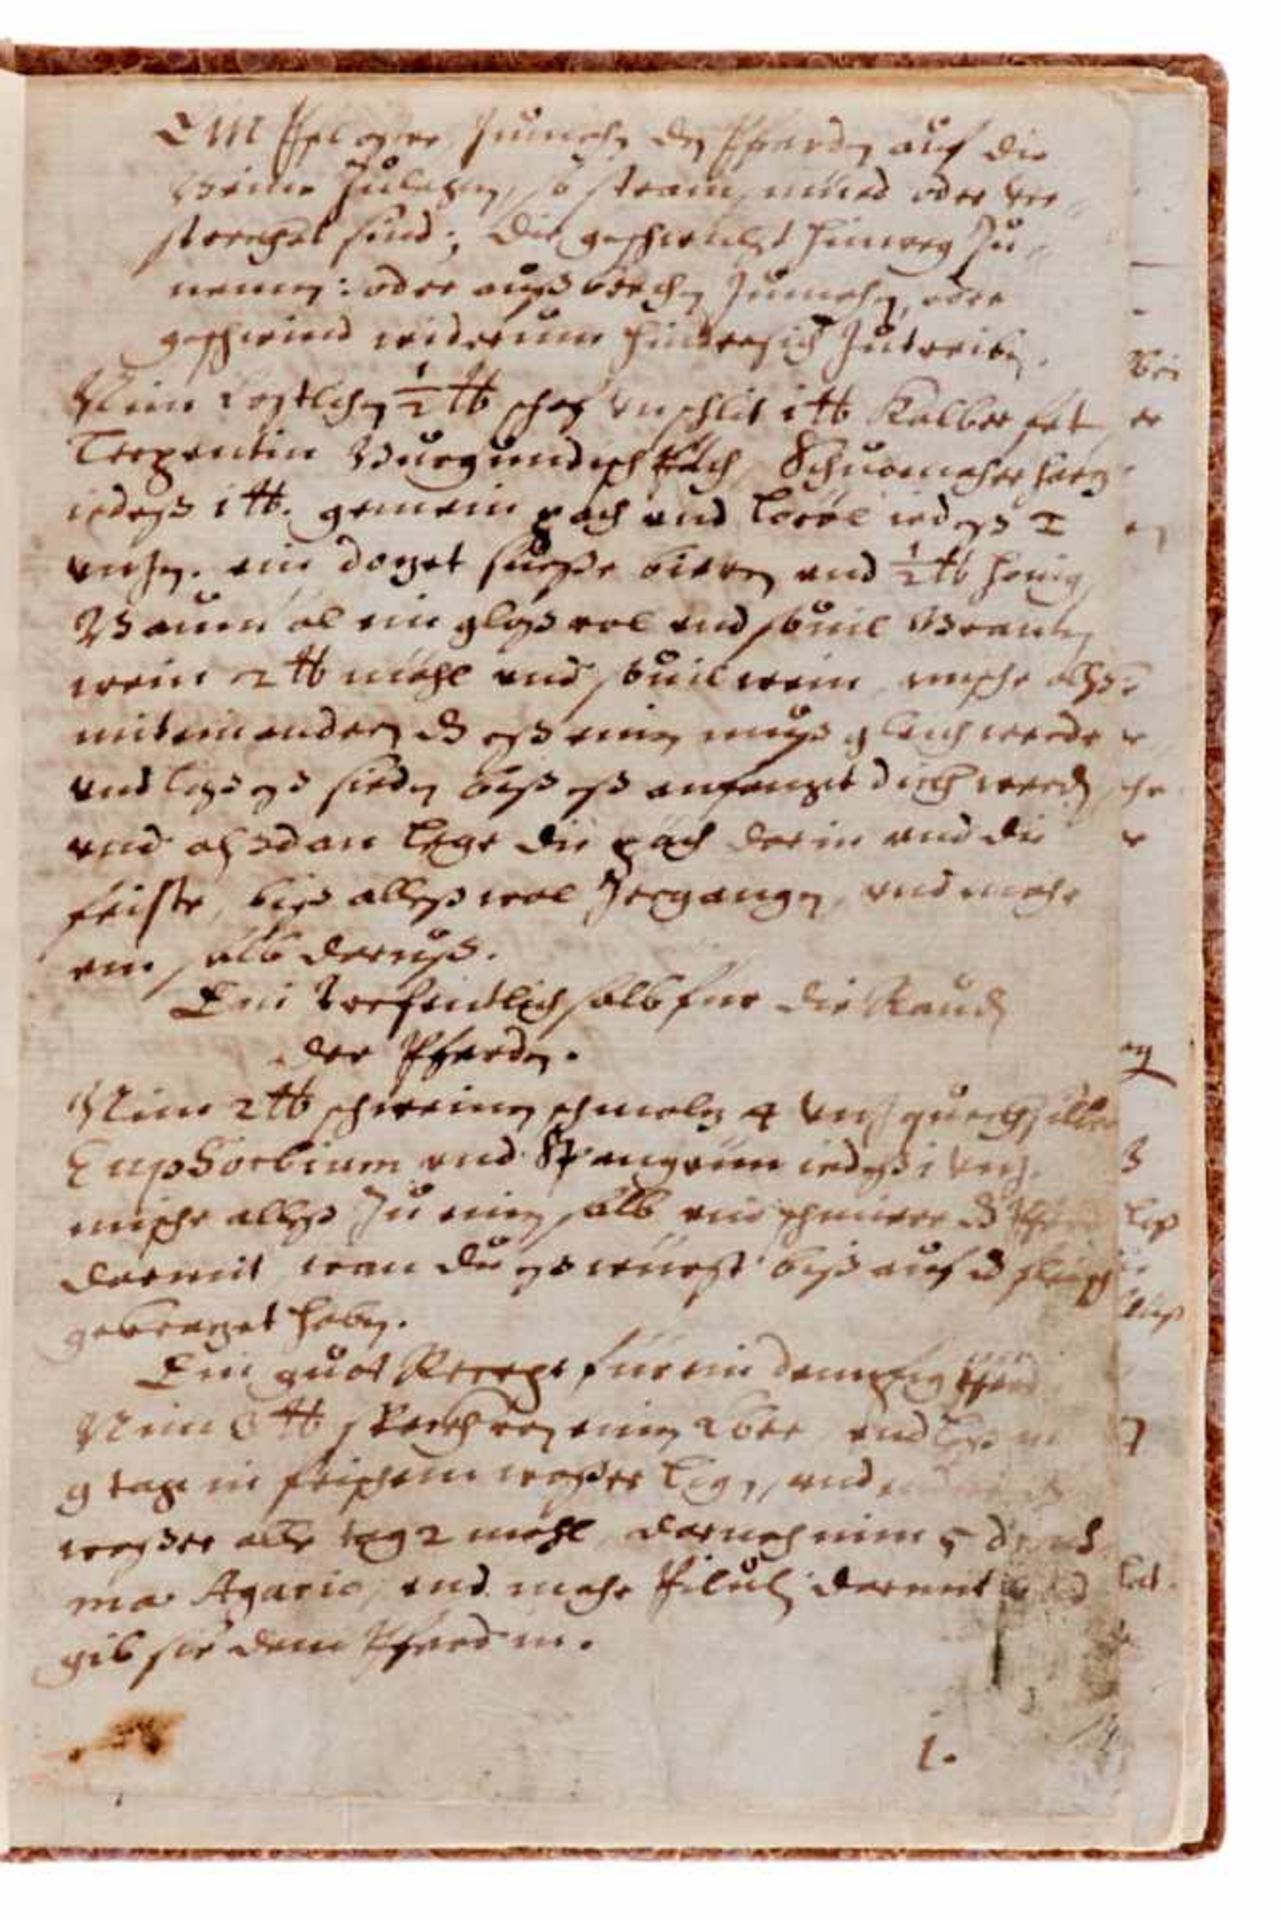 Pferdearzneibuch -Deutsche Handschrift auf Papier. Nicht dat. Deutschland, um 1800. Fragment. 31 Bl. - Bild 2 aus 3